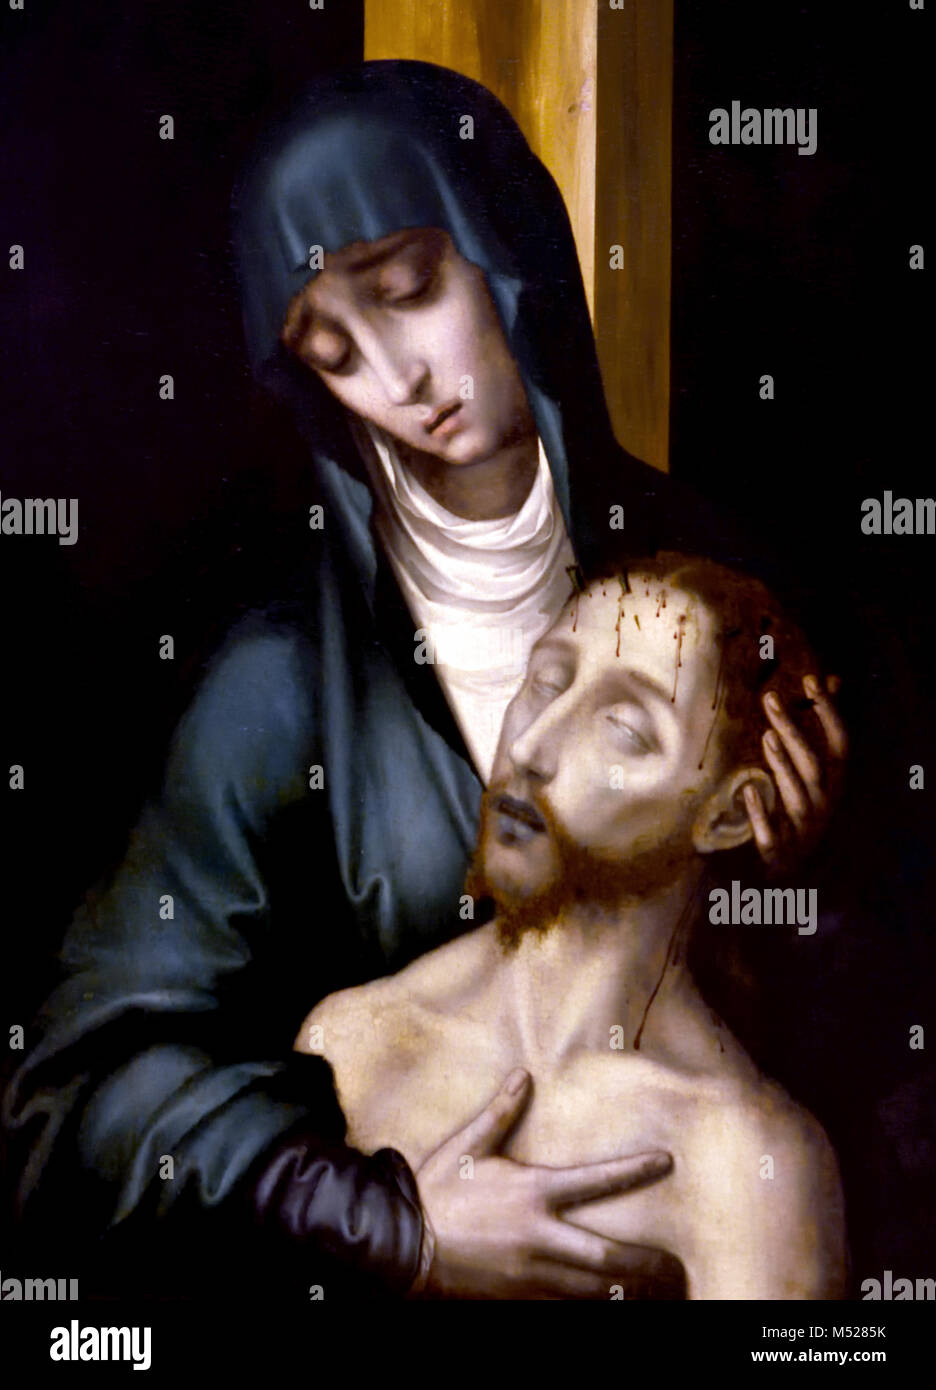 Pietà 1568 Luis de Morales (1509-1586) 16esimo secolo Spagna, Spagnolo ( Gesù Cristo morto e nelle braccia di sua madre, la Vergine Maria. ) Foto Stock